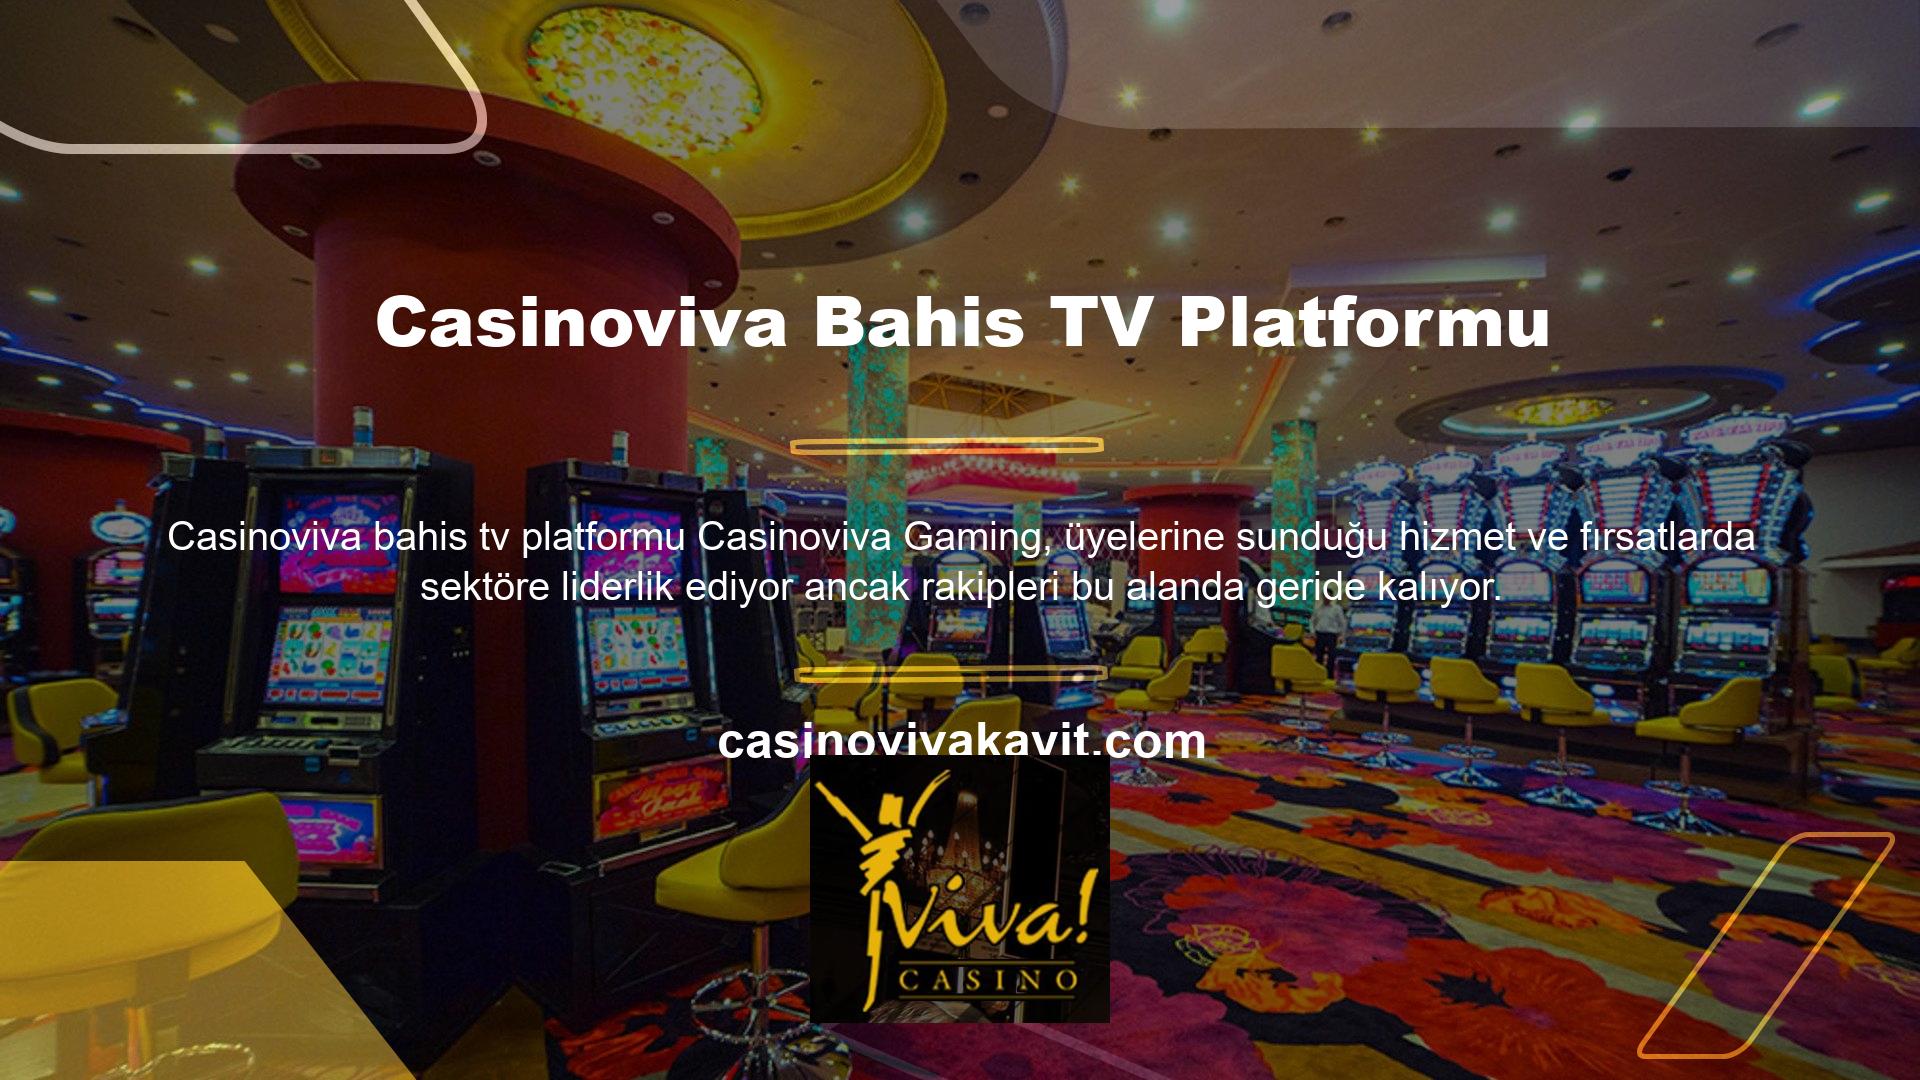 Bahis TV platformu Casinoviva, üye merkezli bir politika izlemektedir ve üyelerinin istek ve isteklerini dikkate alarak sürekli büyümeye çalışmaktadır